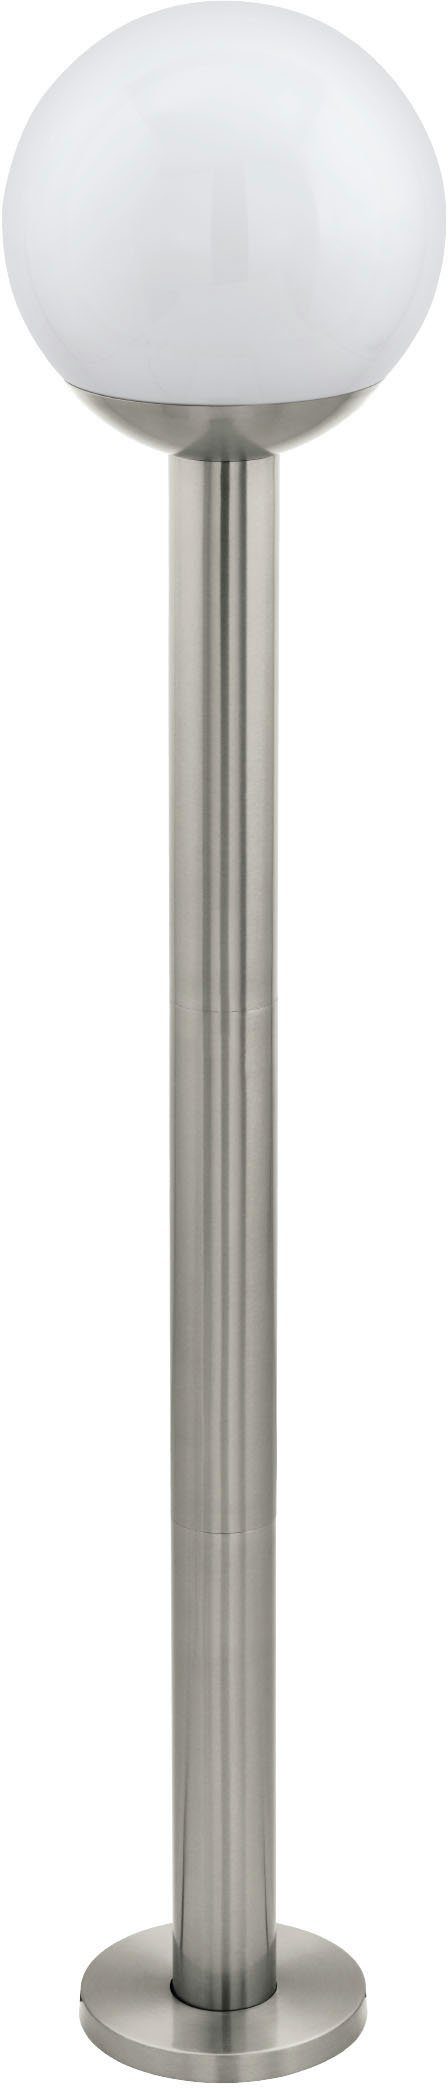 EGLO Stehlampe inkl. ohne wechselbar, 1X9W - Stehleuchte aus silber - Edelstahl Leuchtmittel NISIA-Z, in E27 Leuchtmittel